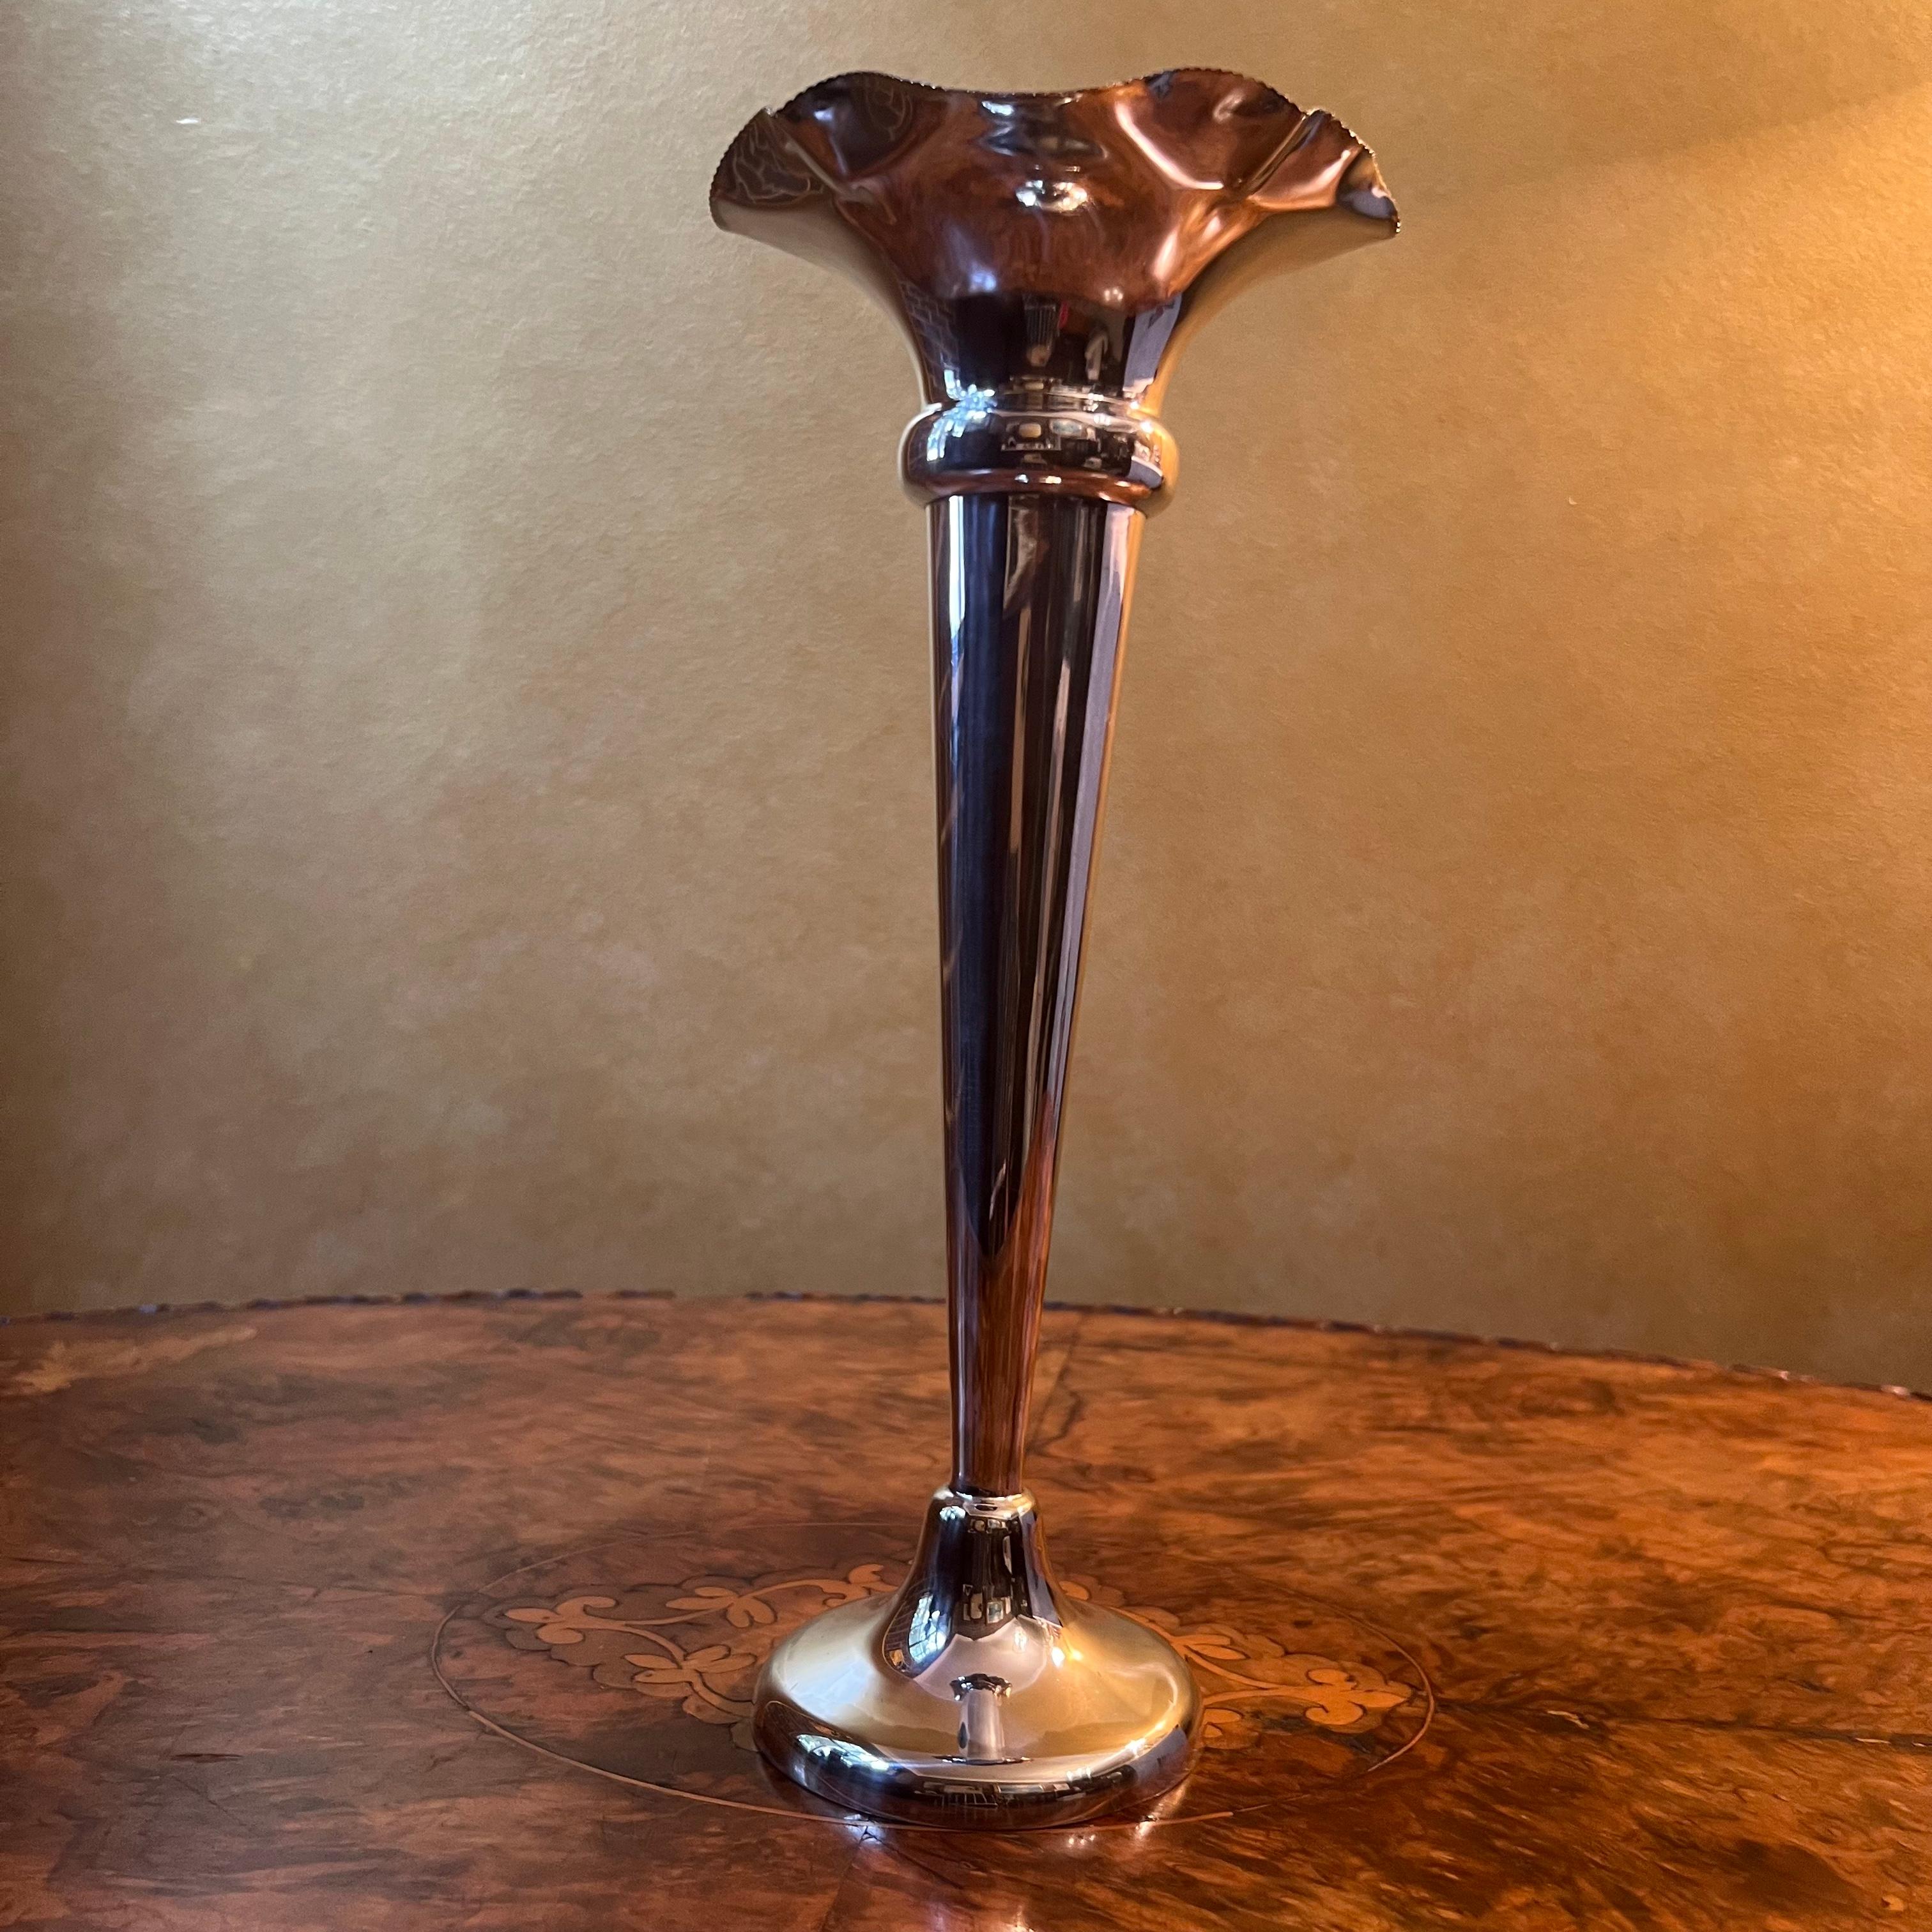 Trompetenförmige Vase mit rüschenartigem Oberteil, im Oberteil befinden sich einige Fadenspuren auf Silber, einige kleine Dellen und Flecken, wurde professionell poliert. 

MATERIAL: Versilbert

Abmessungen:  25,5 cm hoch, 11 cm Durchmesser